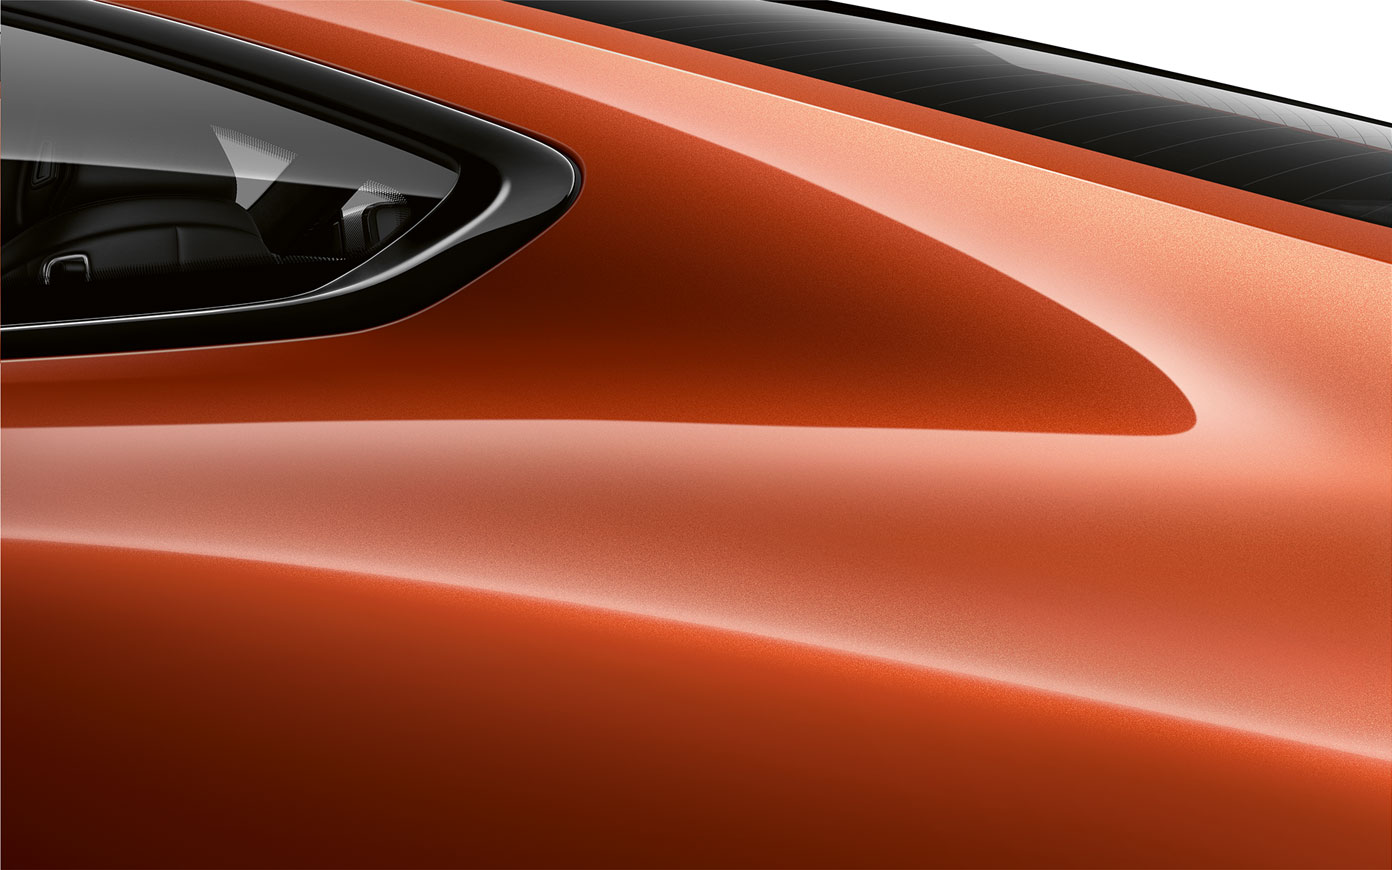 Ripresa da vicino del montante posteriore della BMW Serie 8 Coupé in Sunset Orange metallizzato G15.